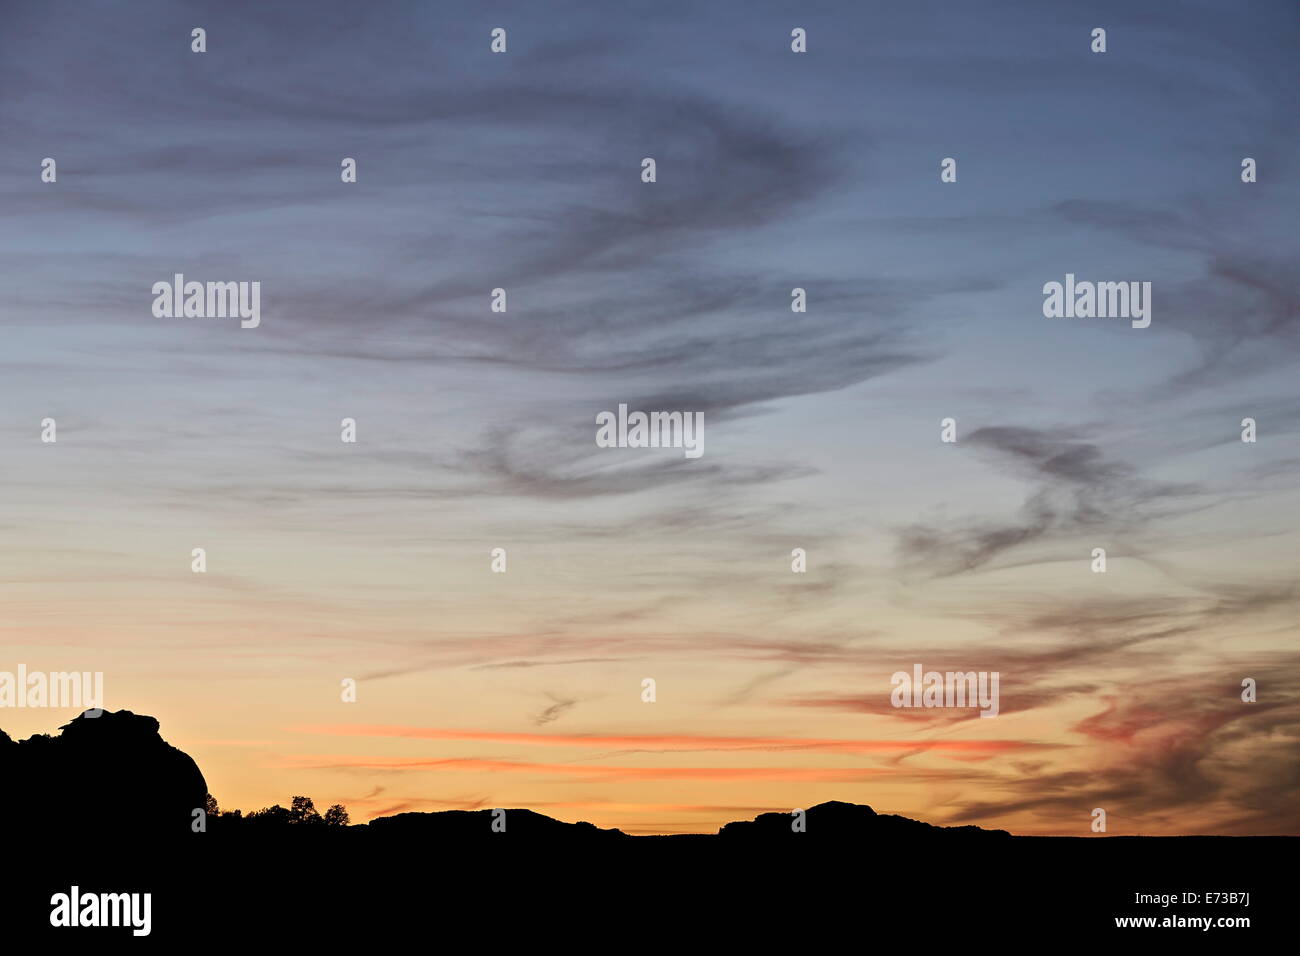 Wispy nuvole al tramonto, tasca bianco e vermiglio scogliere monumento nazionale, Arizona, Stati Uniti d'America, America del Nord Foto Stock